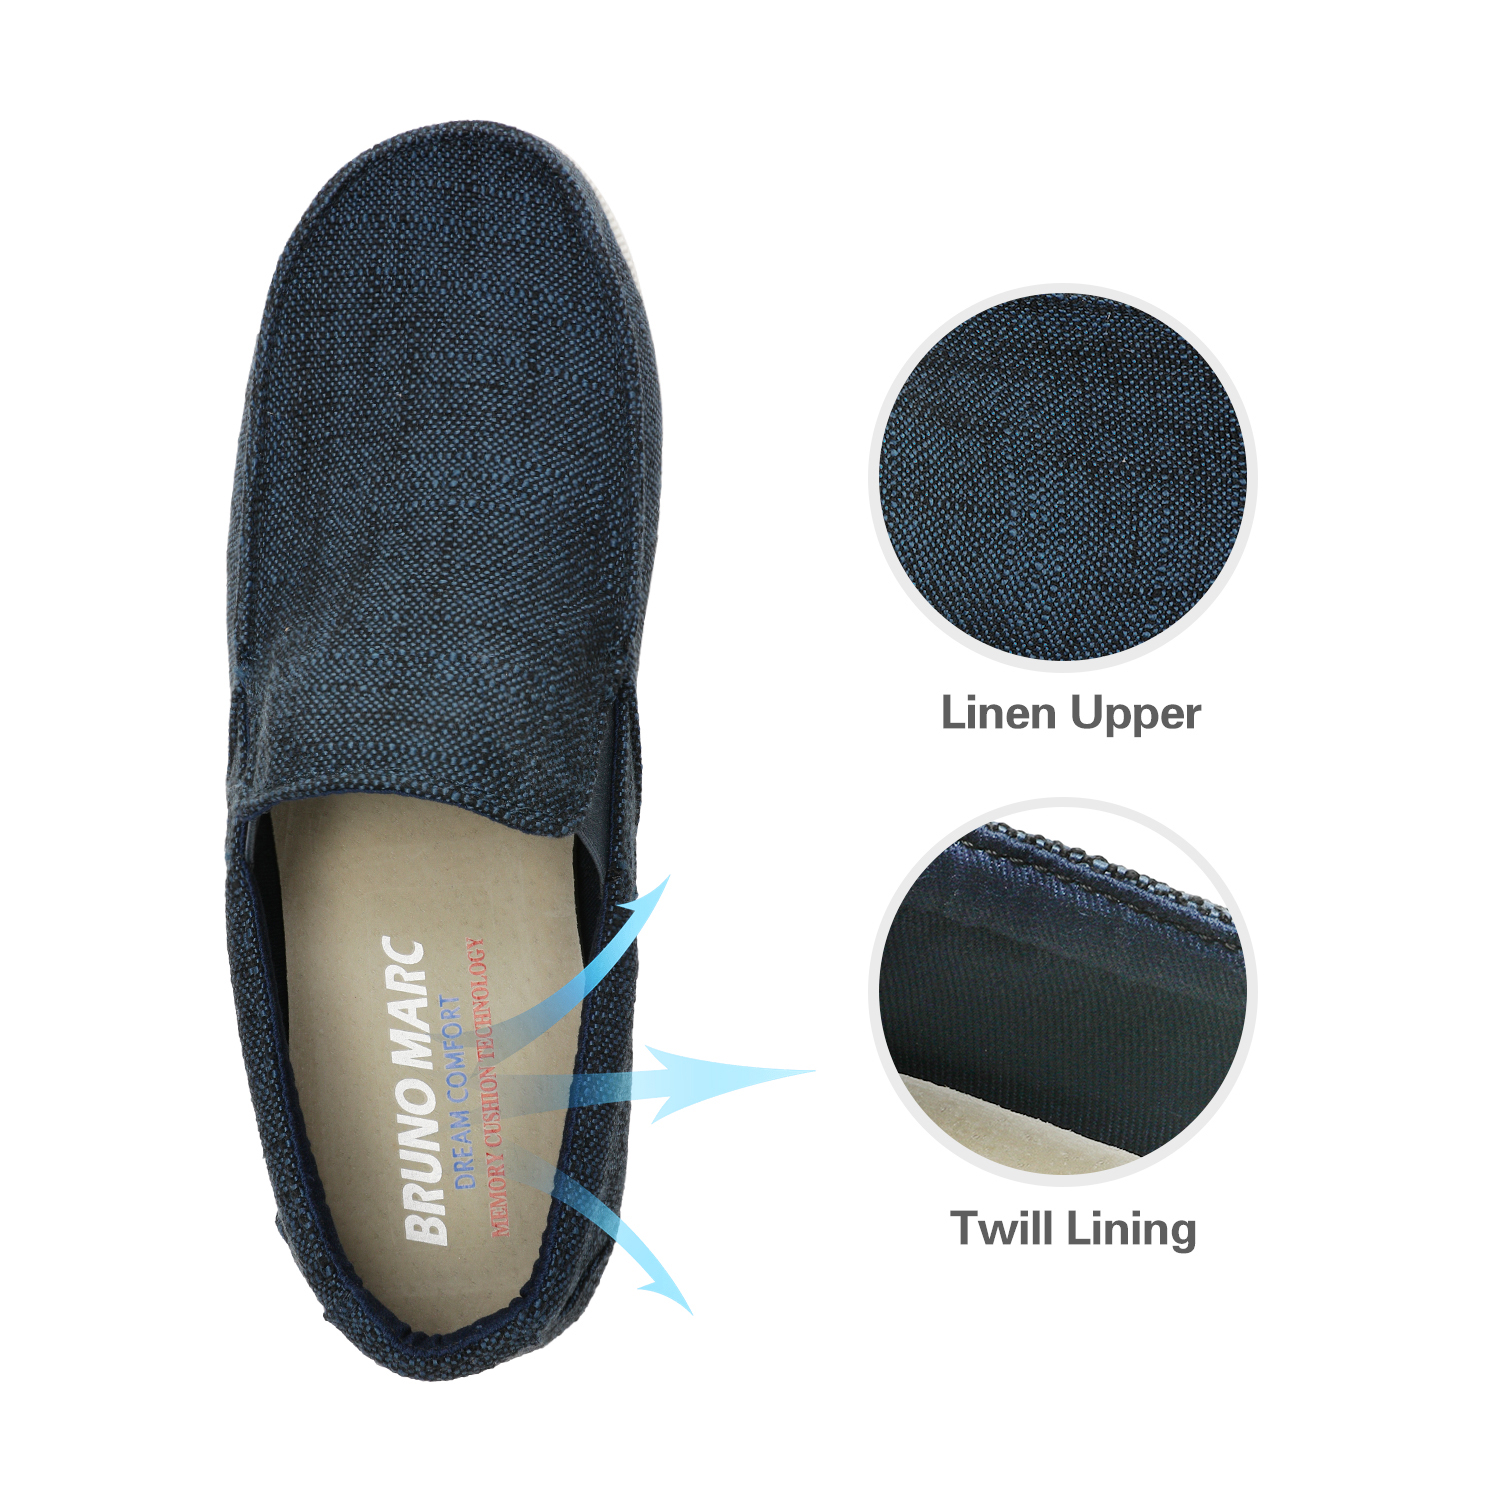 Bruno Marc Men's Slip On Loafer Walking Shoes SUNVENT-01 NAVY/BLUE size 8.5 - image 4 of 5